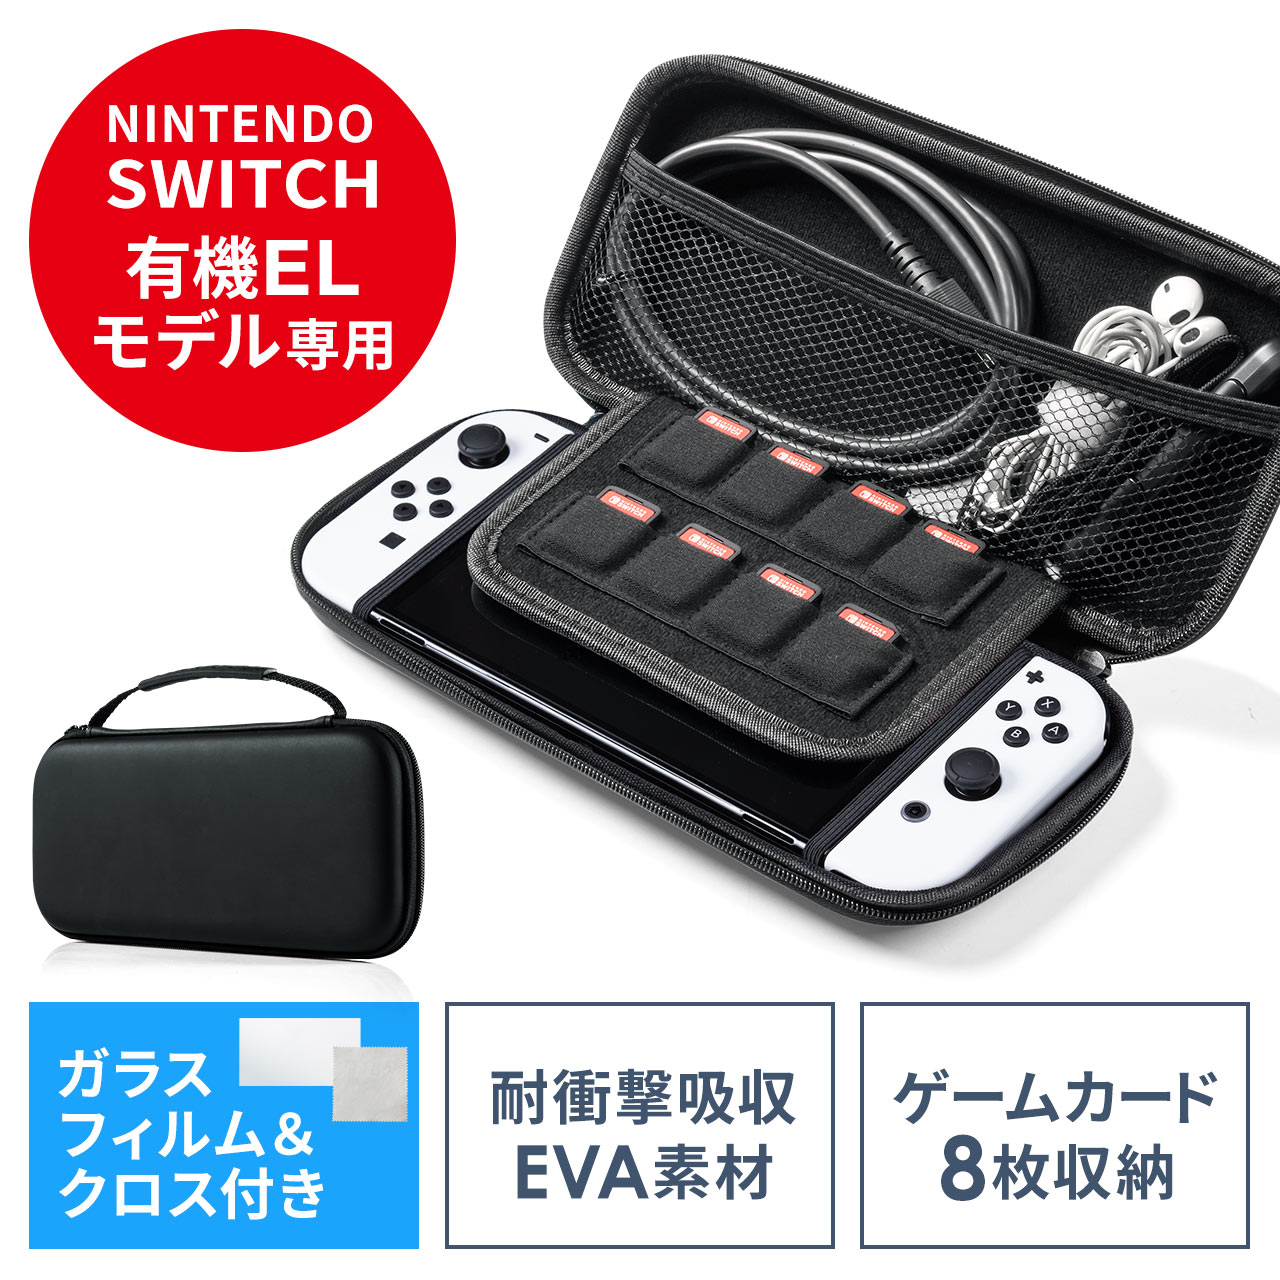 Nintendo Switch 有機ELモデル専用 セミハードケース ガラスフィルム